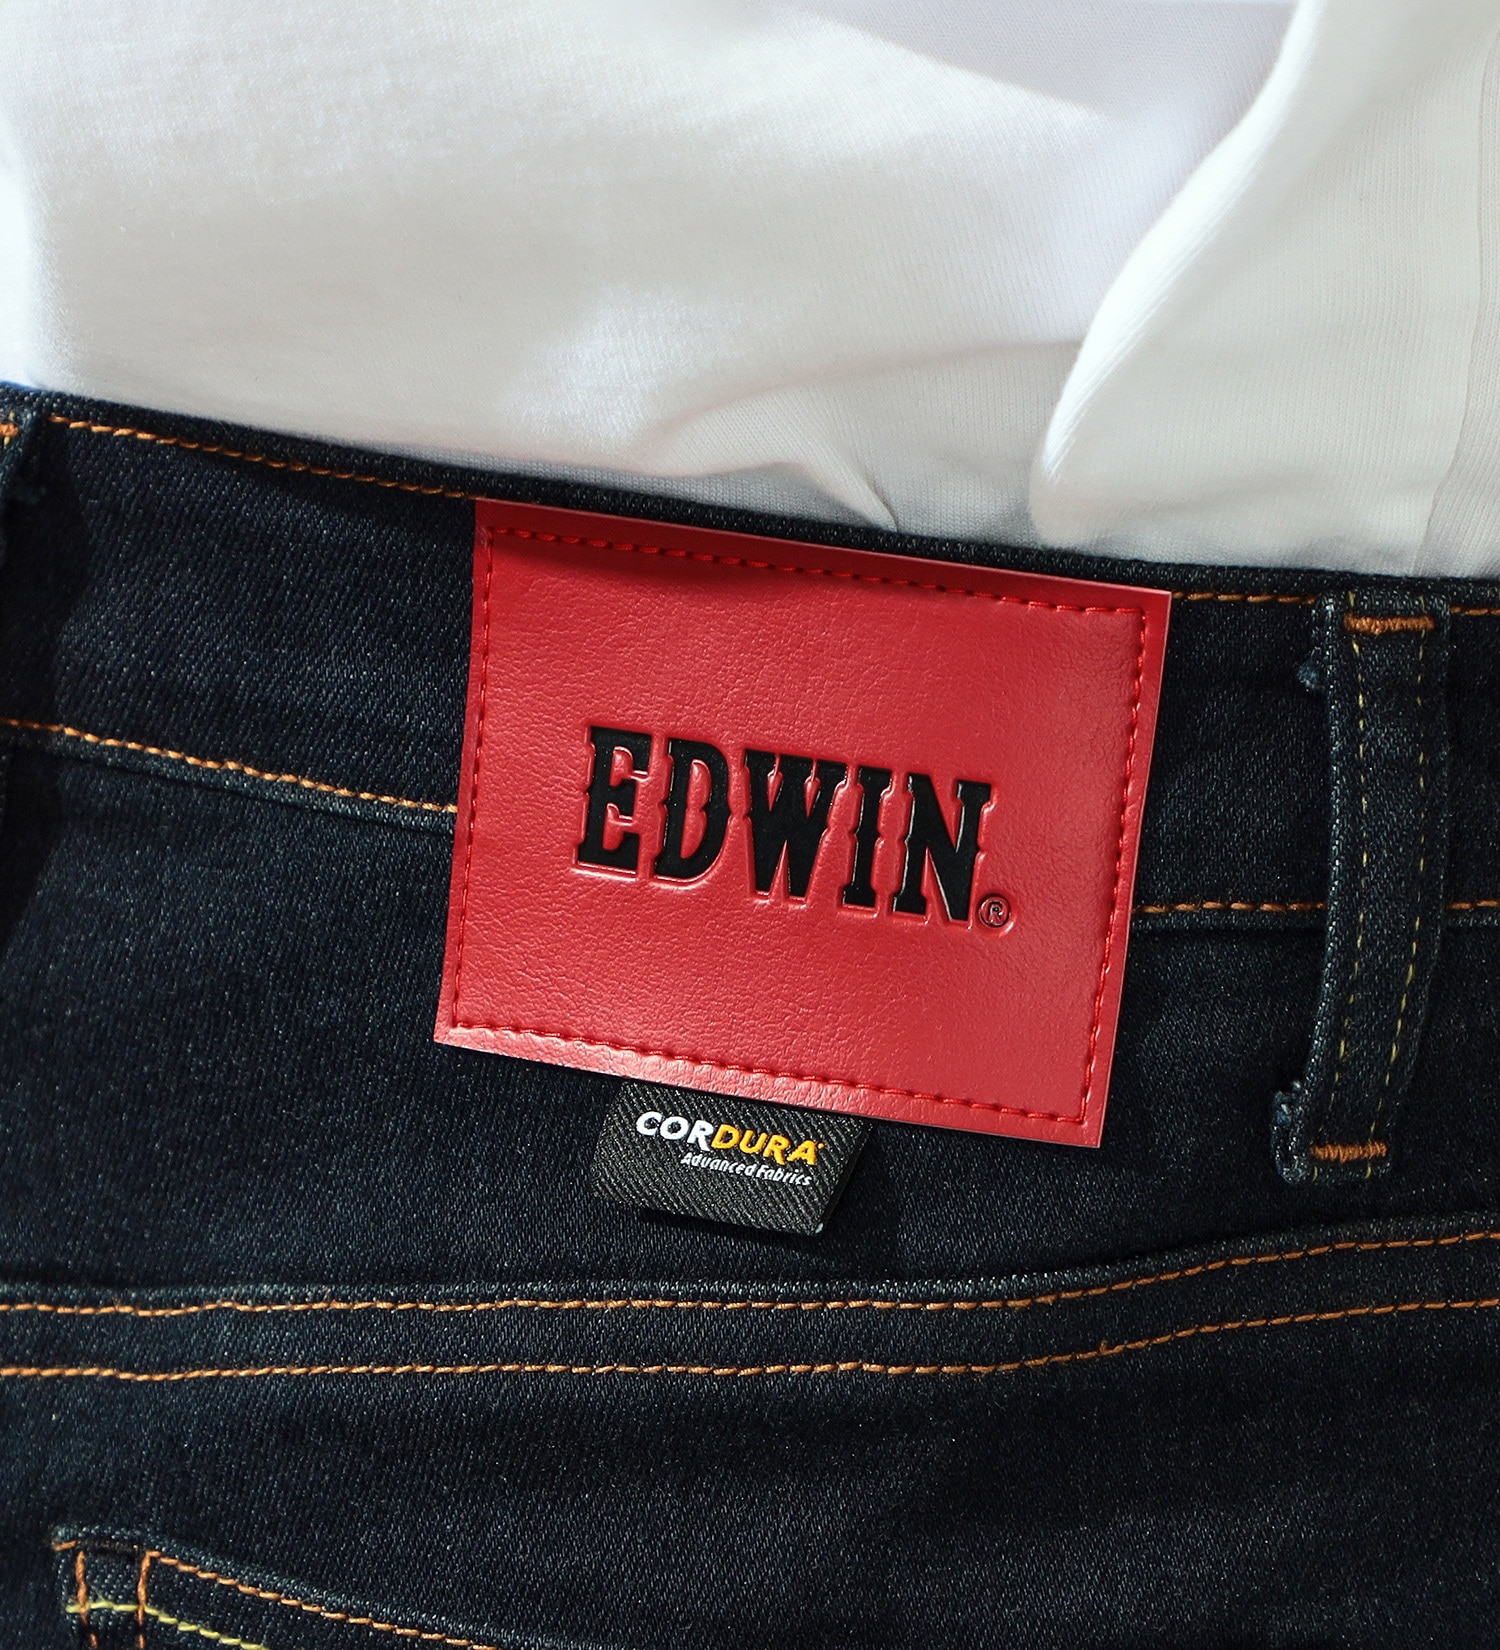 EDWIN(エドウイン)のバイク用 コーデュラストレッチデニム ハイパーストレッチCORDURA denim fabric|パンツ/デニムパンツ/メンズ|インディゴブルー